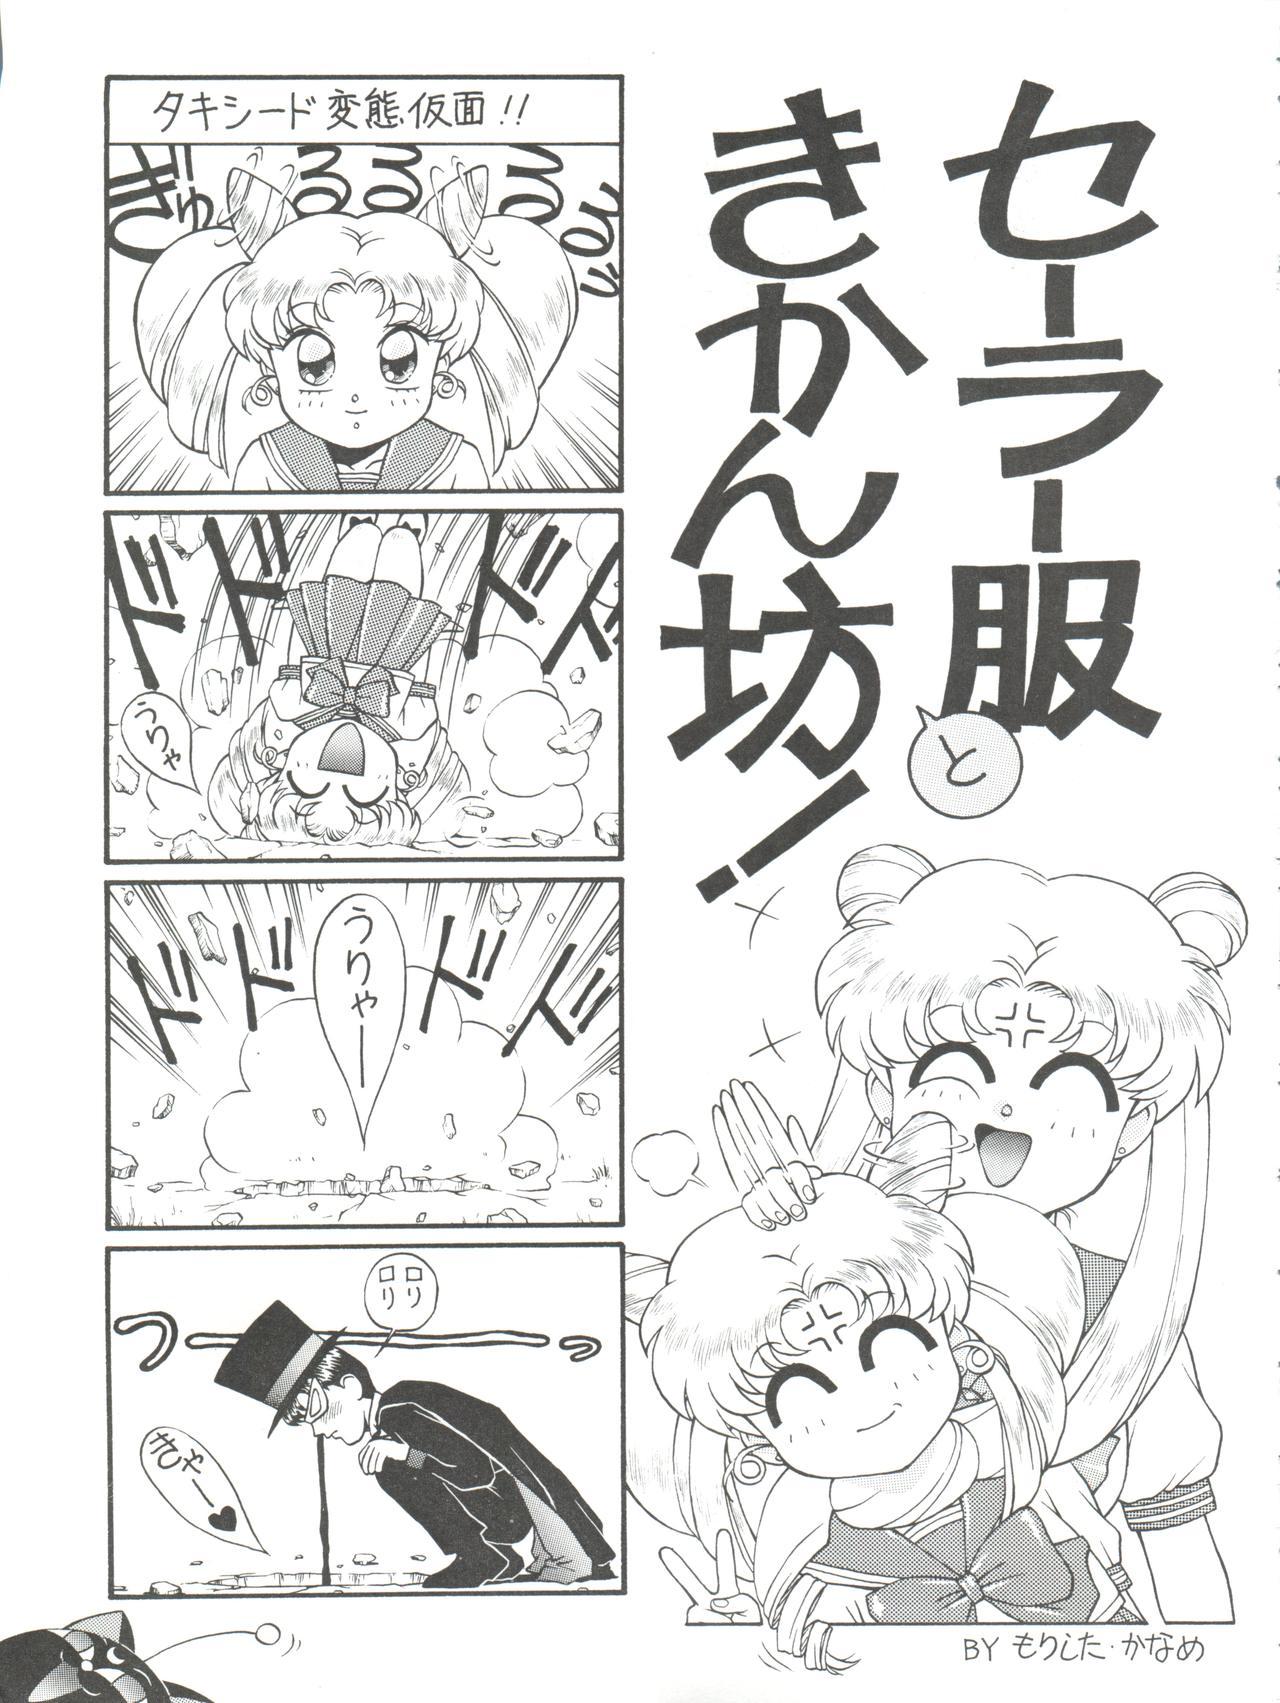 Facials NANIWA-YA FINAL DRESS UP! - Sailor moon Slayers Hime chans ribbon Ng knight lamune and 40 Brave express might gaine Girls - Page 11